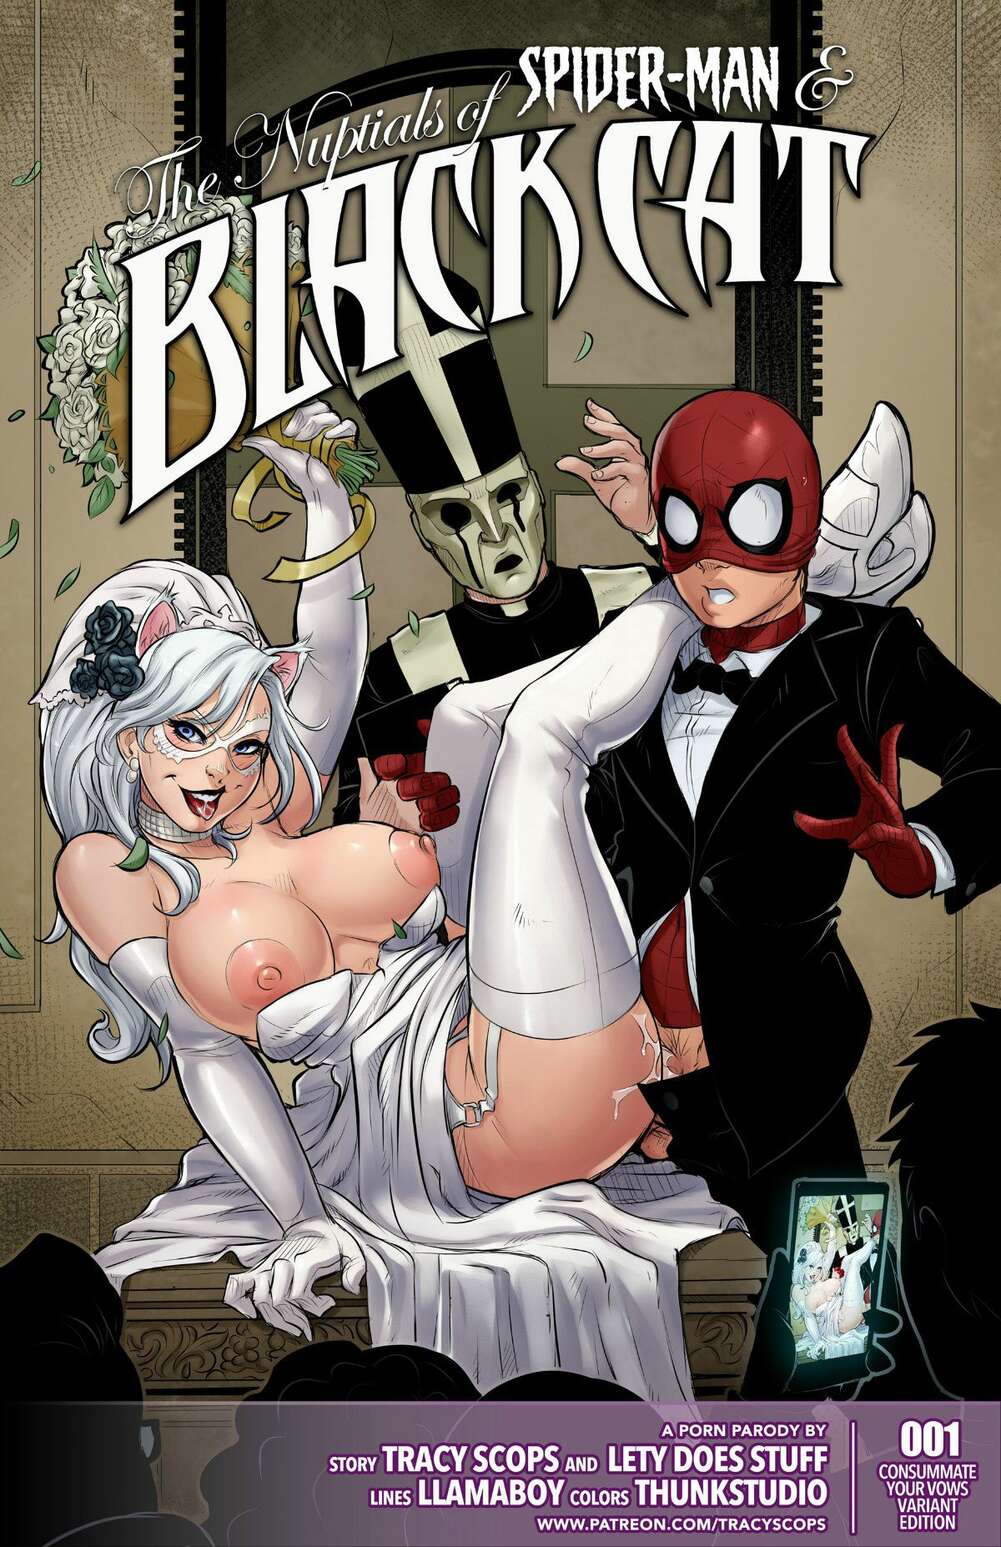 1001px x 1547px - â„¹ï¸ Porn comics The Nuptials. Spider-Man. Erotic comic party suit was â„¹ï¸ |  Porn comics hentai adult only | comicsporn.site